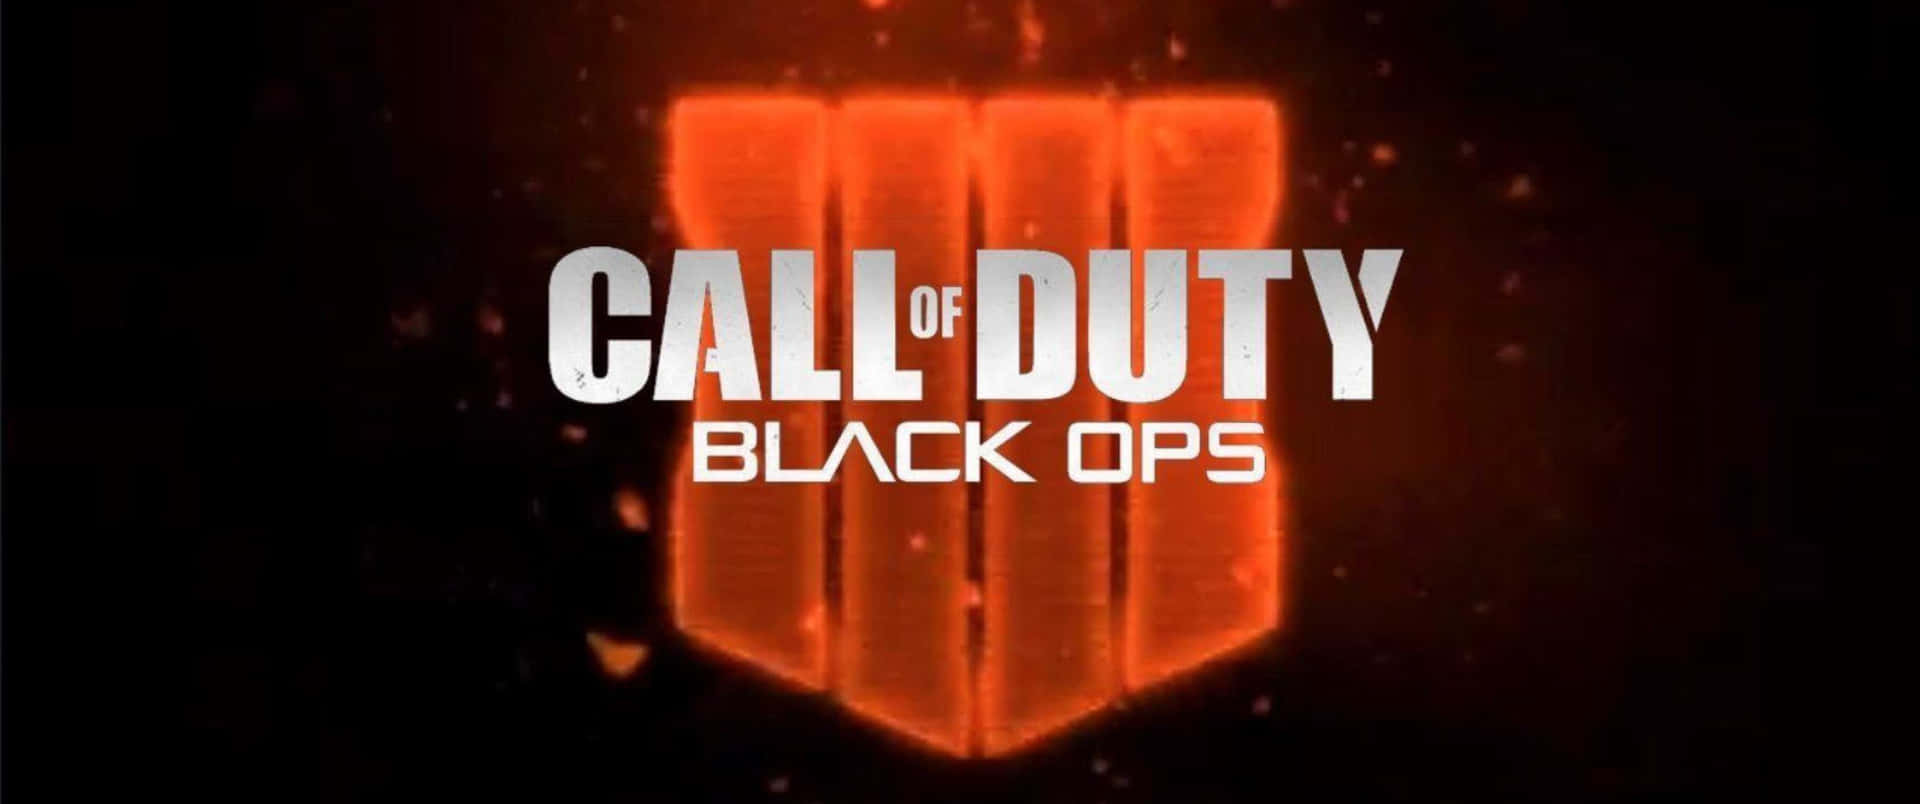 Sumérgeteen El Emocionante Mundo De Call Of Duty Black Ops 4 Con Este Impresionante Fondo De Pantalla De 3440x1440p.